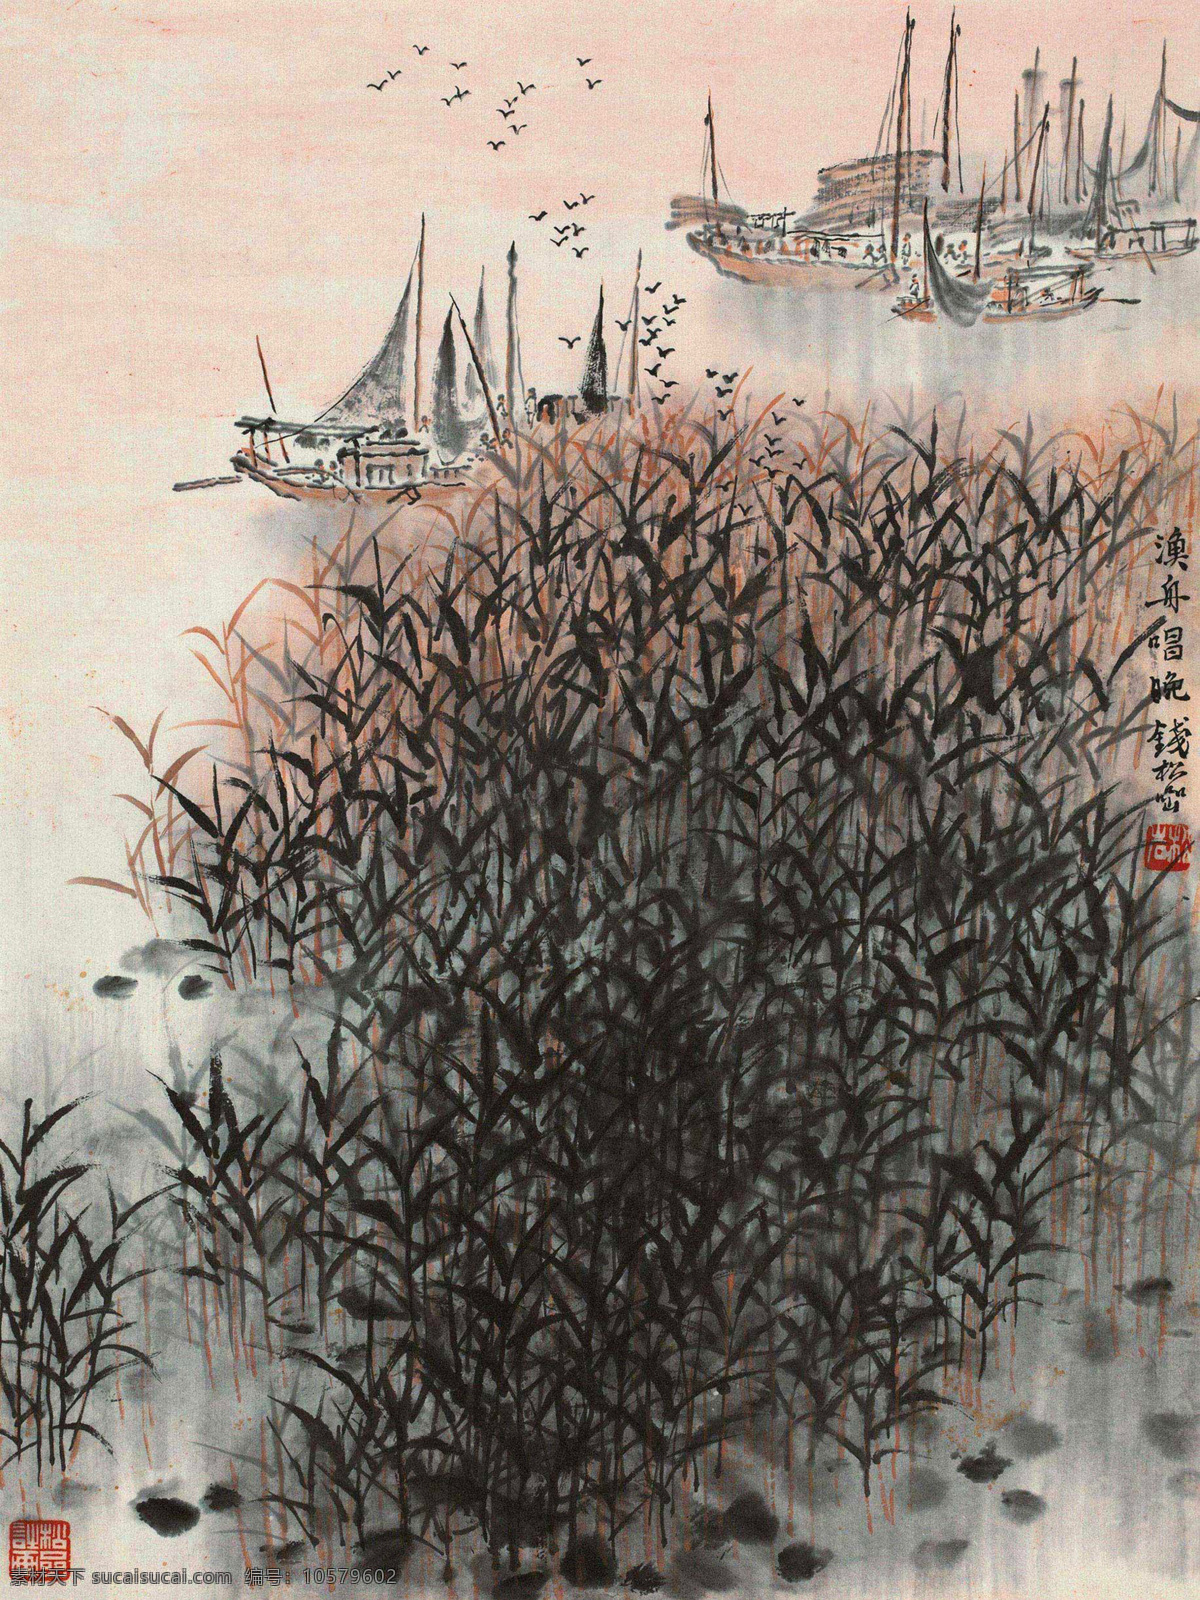 渔舟唱晚 钱松岩 国画 鱼米之乡 写意 水墨画 中国画 绘画书法 文化艺术